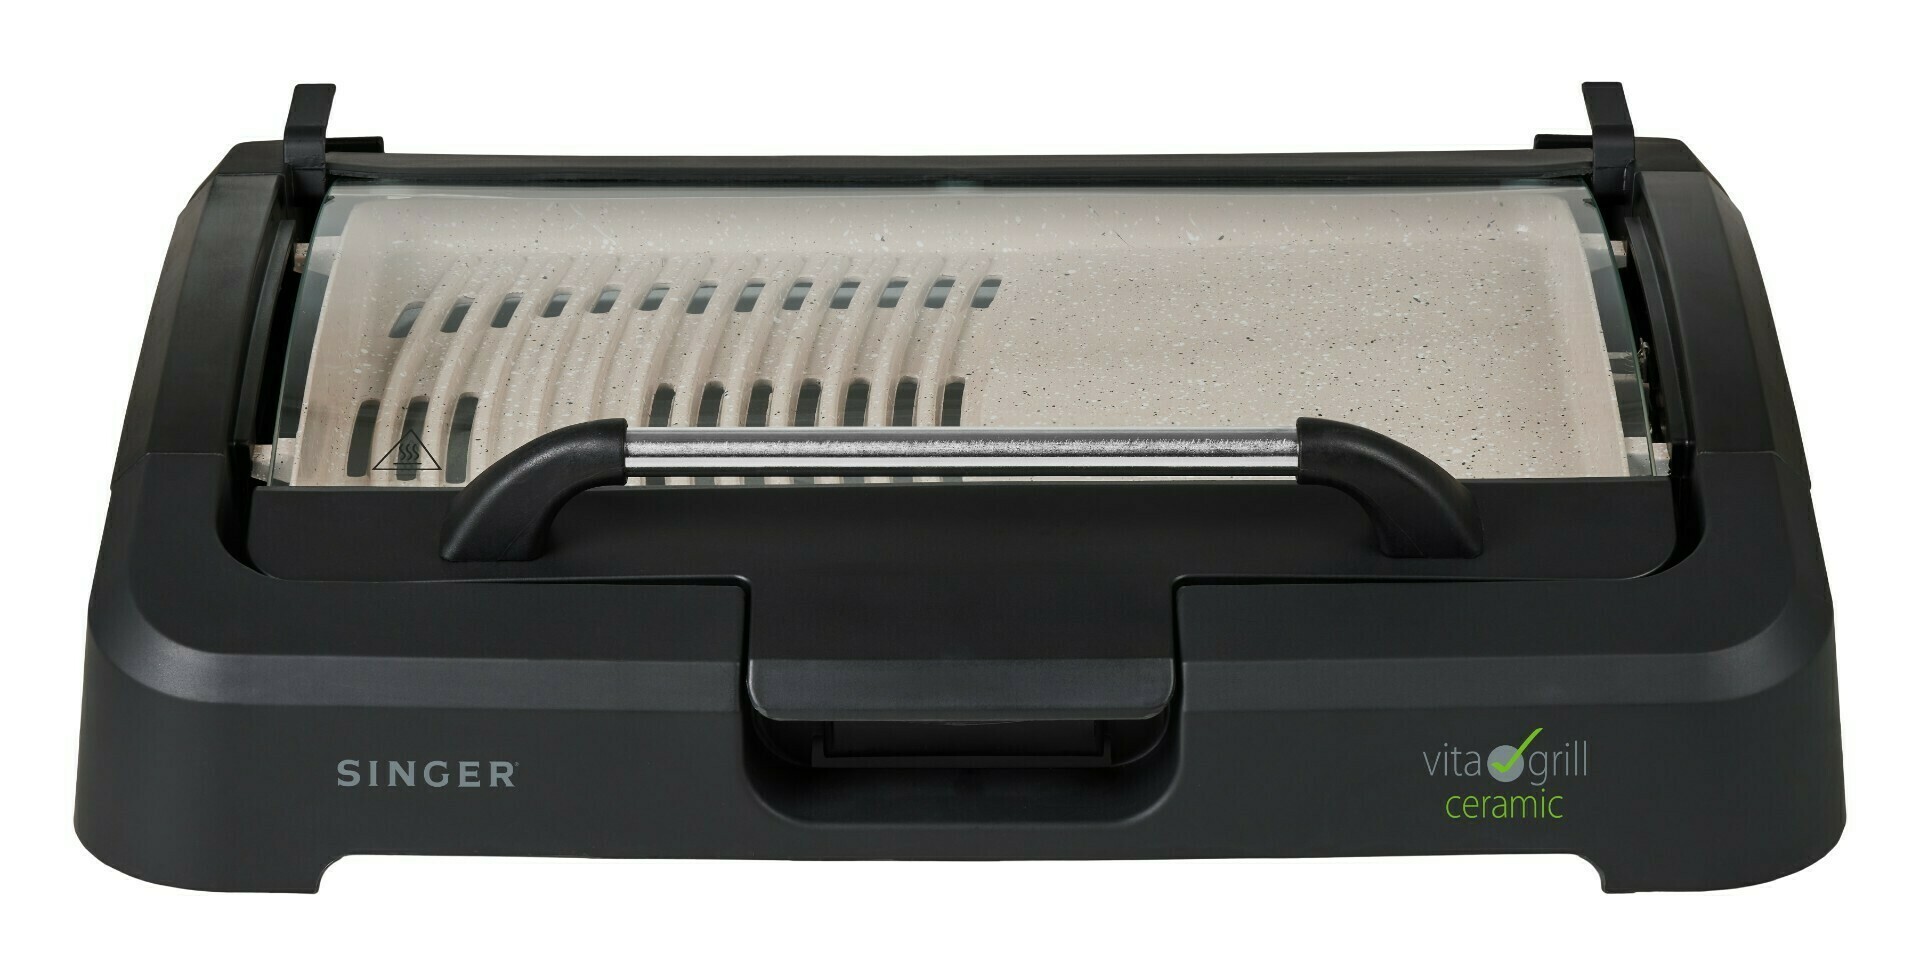 SINGER VITA GRILL VG-2200